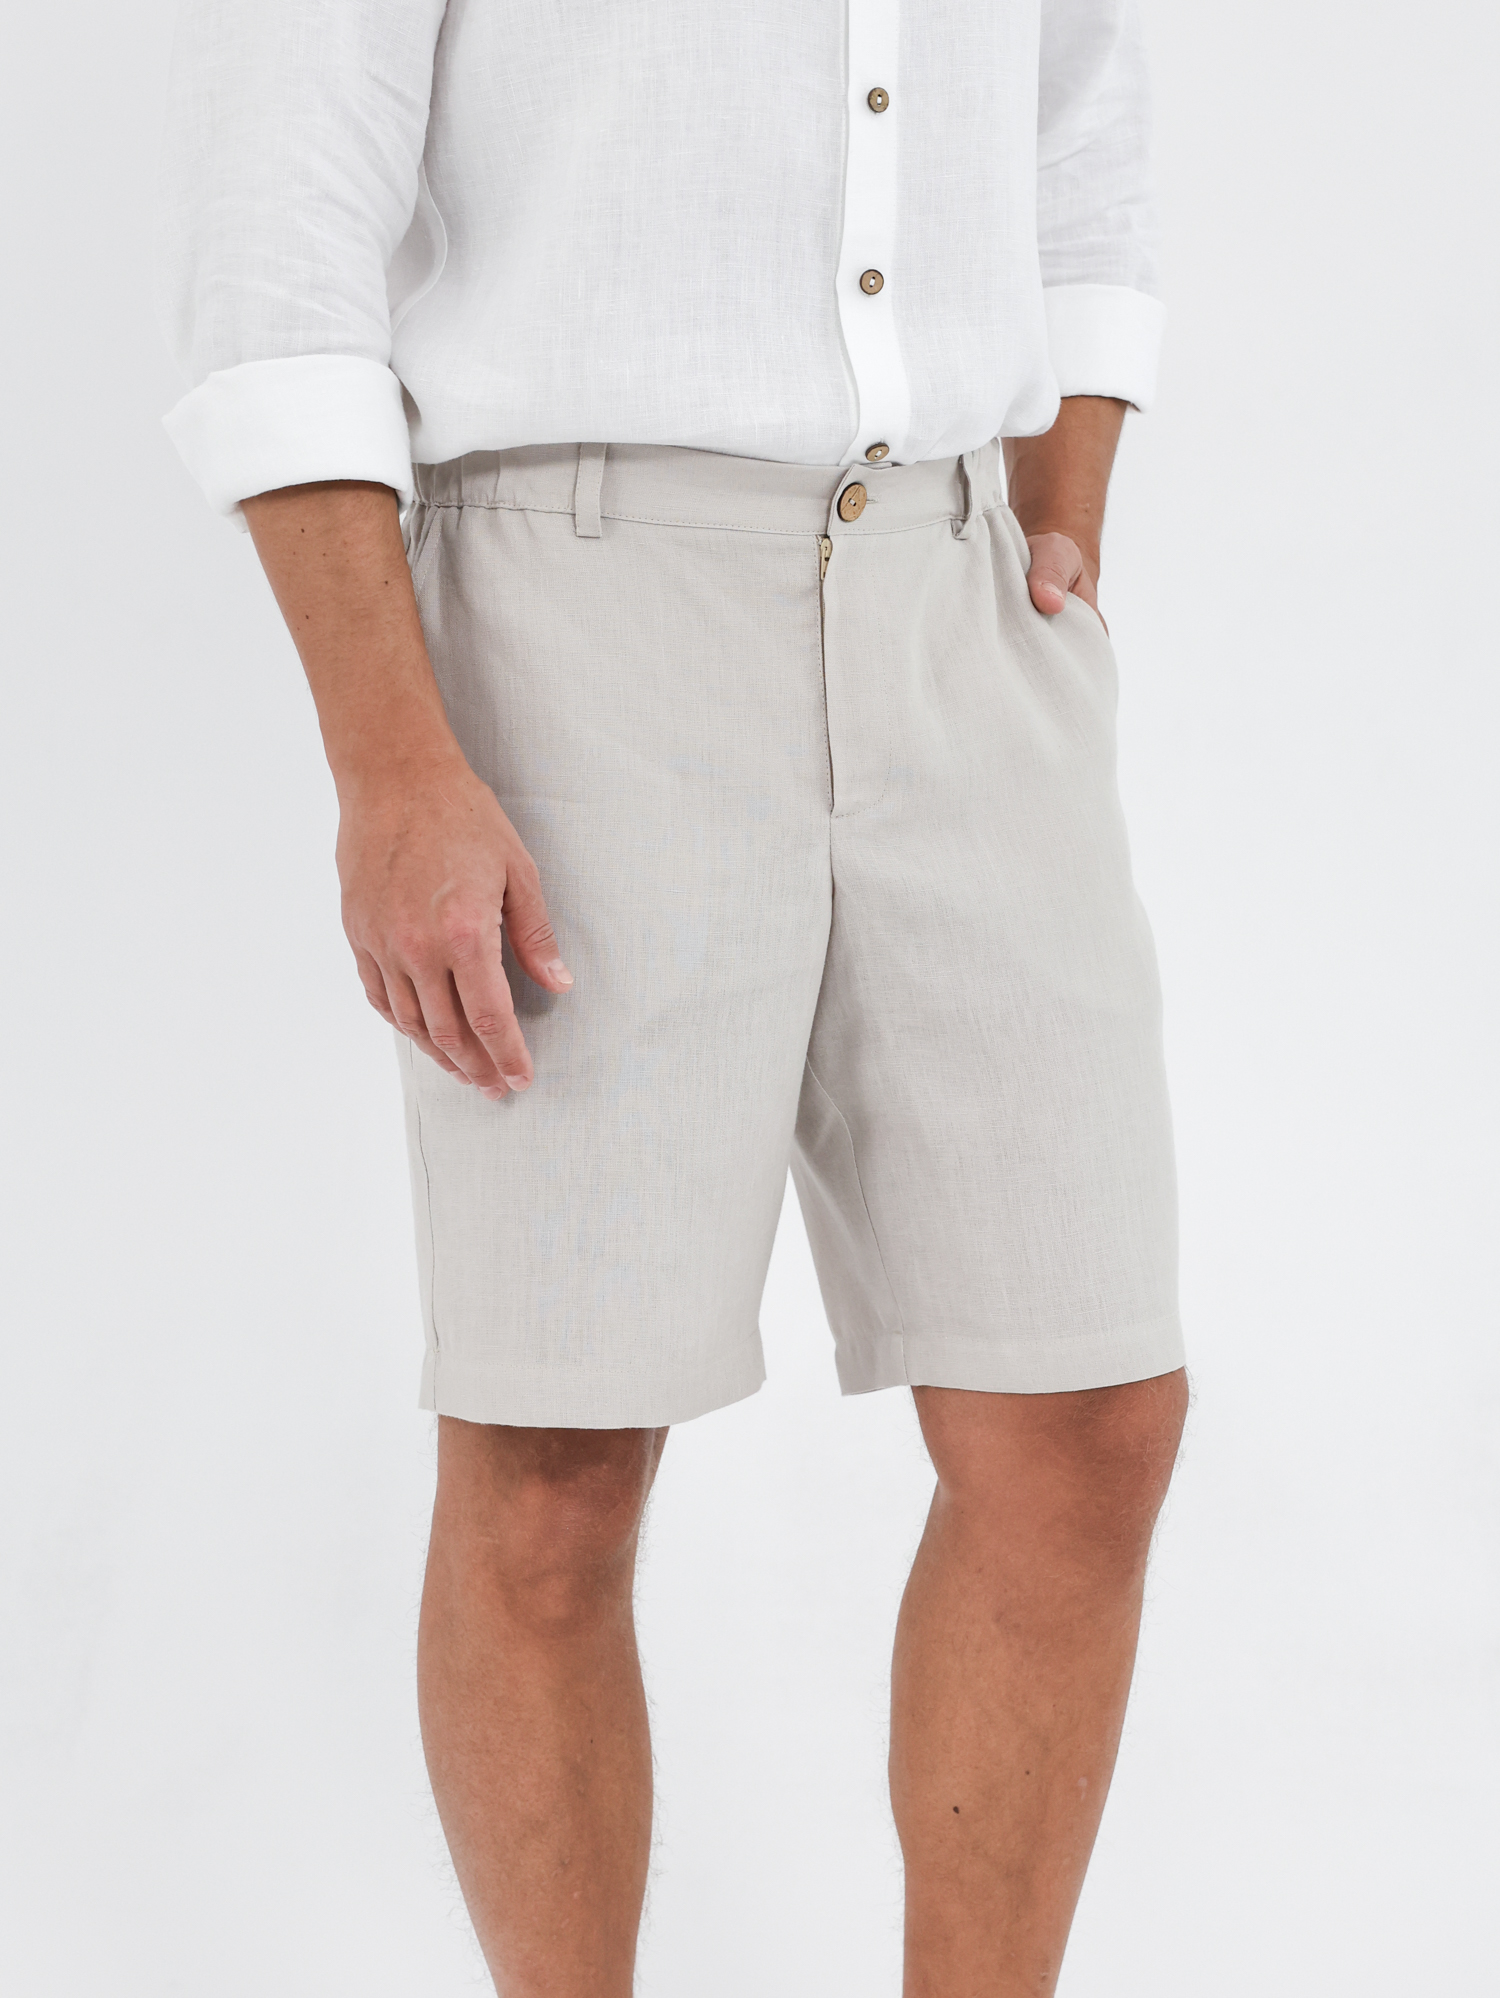 Men's linen shorts with a zipper